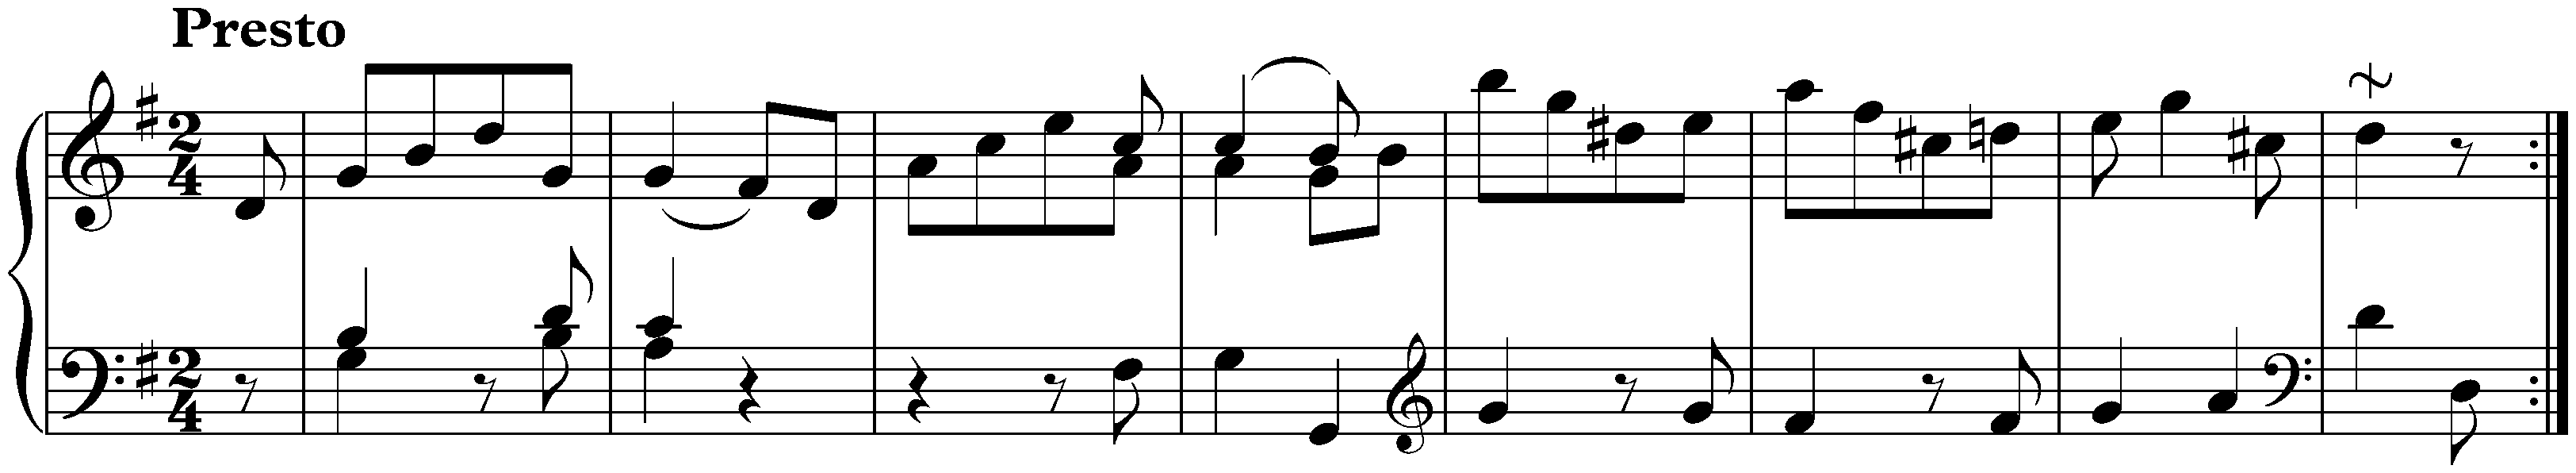 Sonata in G major, Hob. XVI:27; 3. Presto